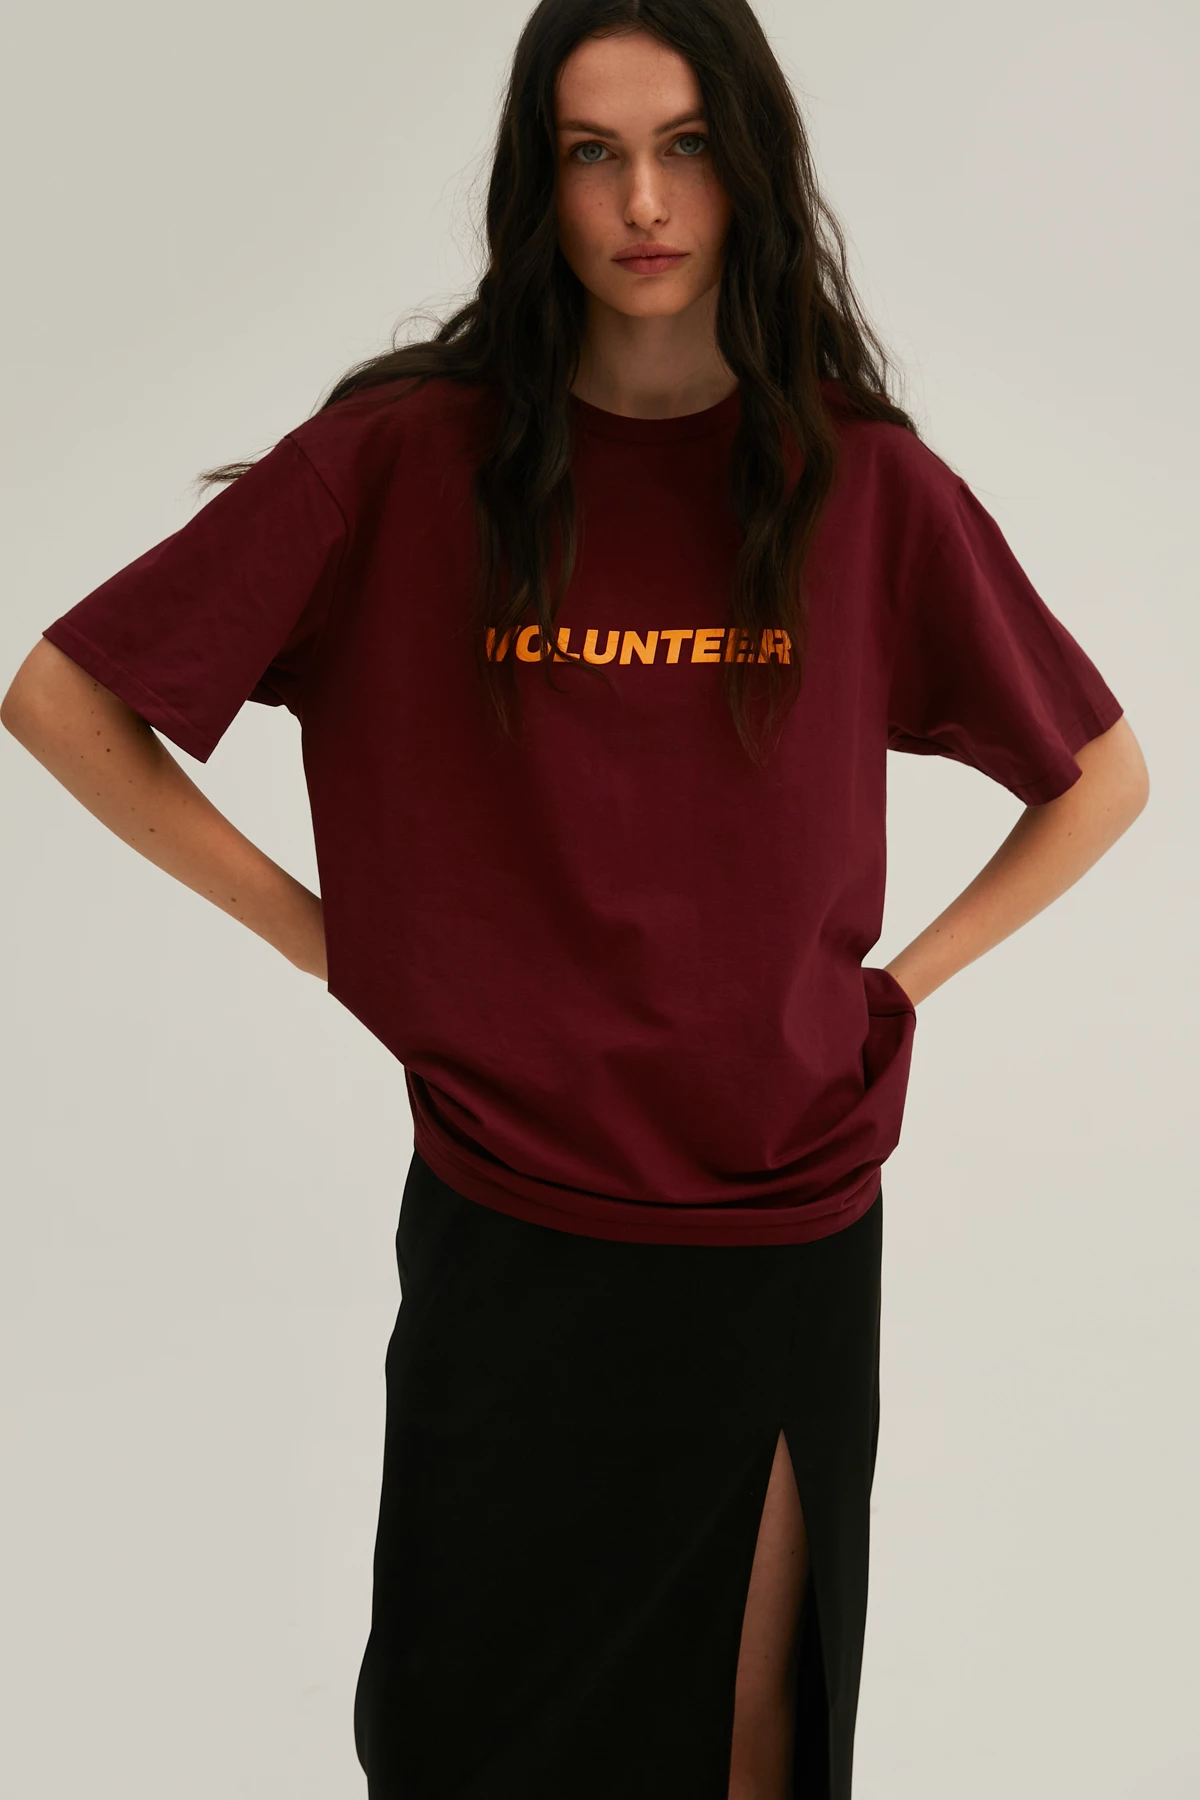 Бордова унісекс-футболка з написом "Volunteer" з трикотажу, фото 8